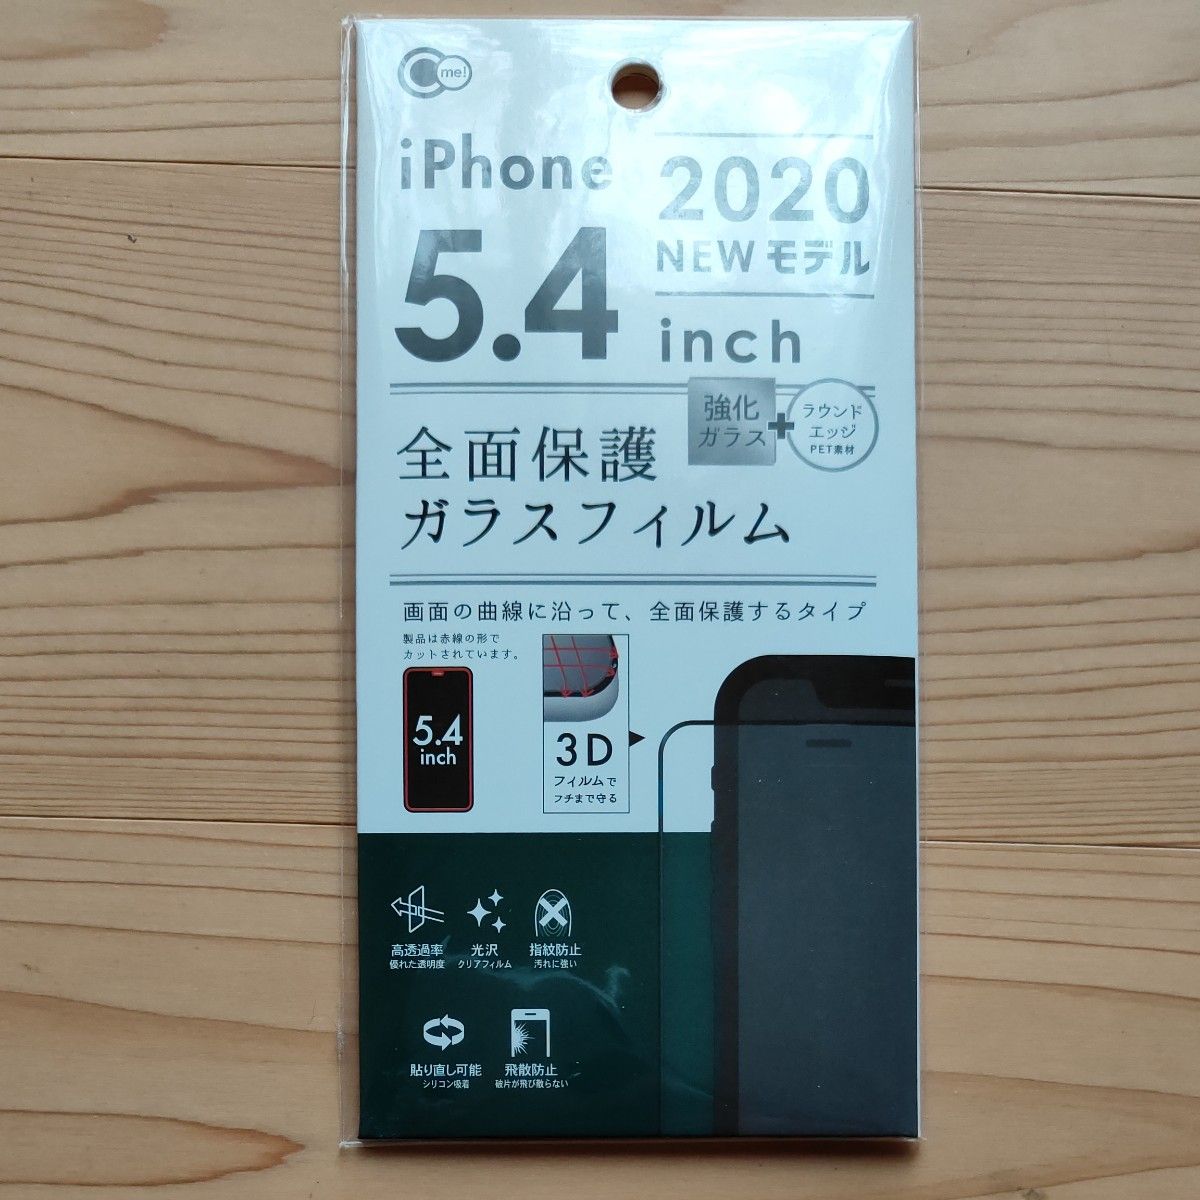 iPhone2020 5.4inch 全面保護ガラスフィルム 保護フイルム iPhone12 mini対応 5.4インチ no2